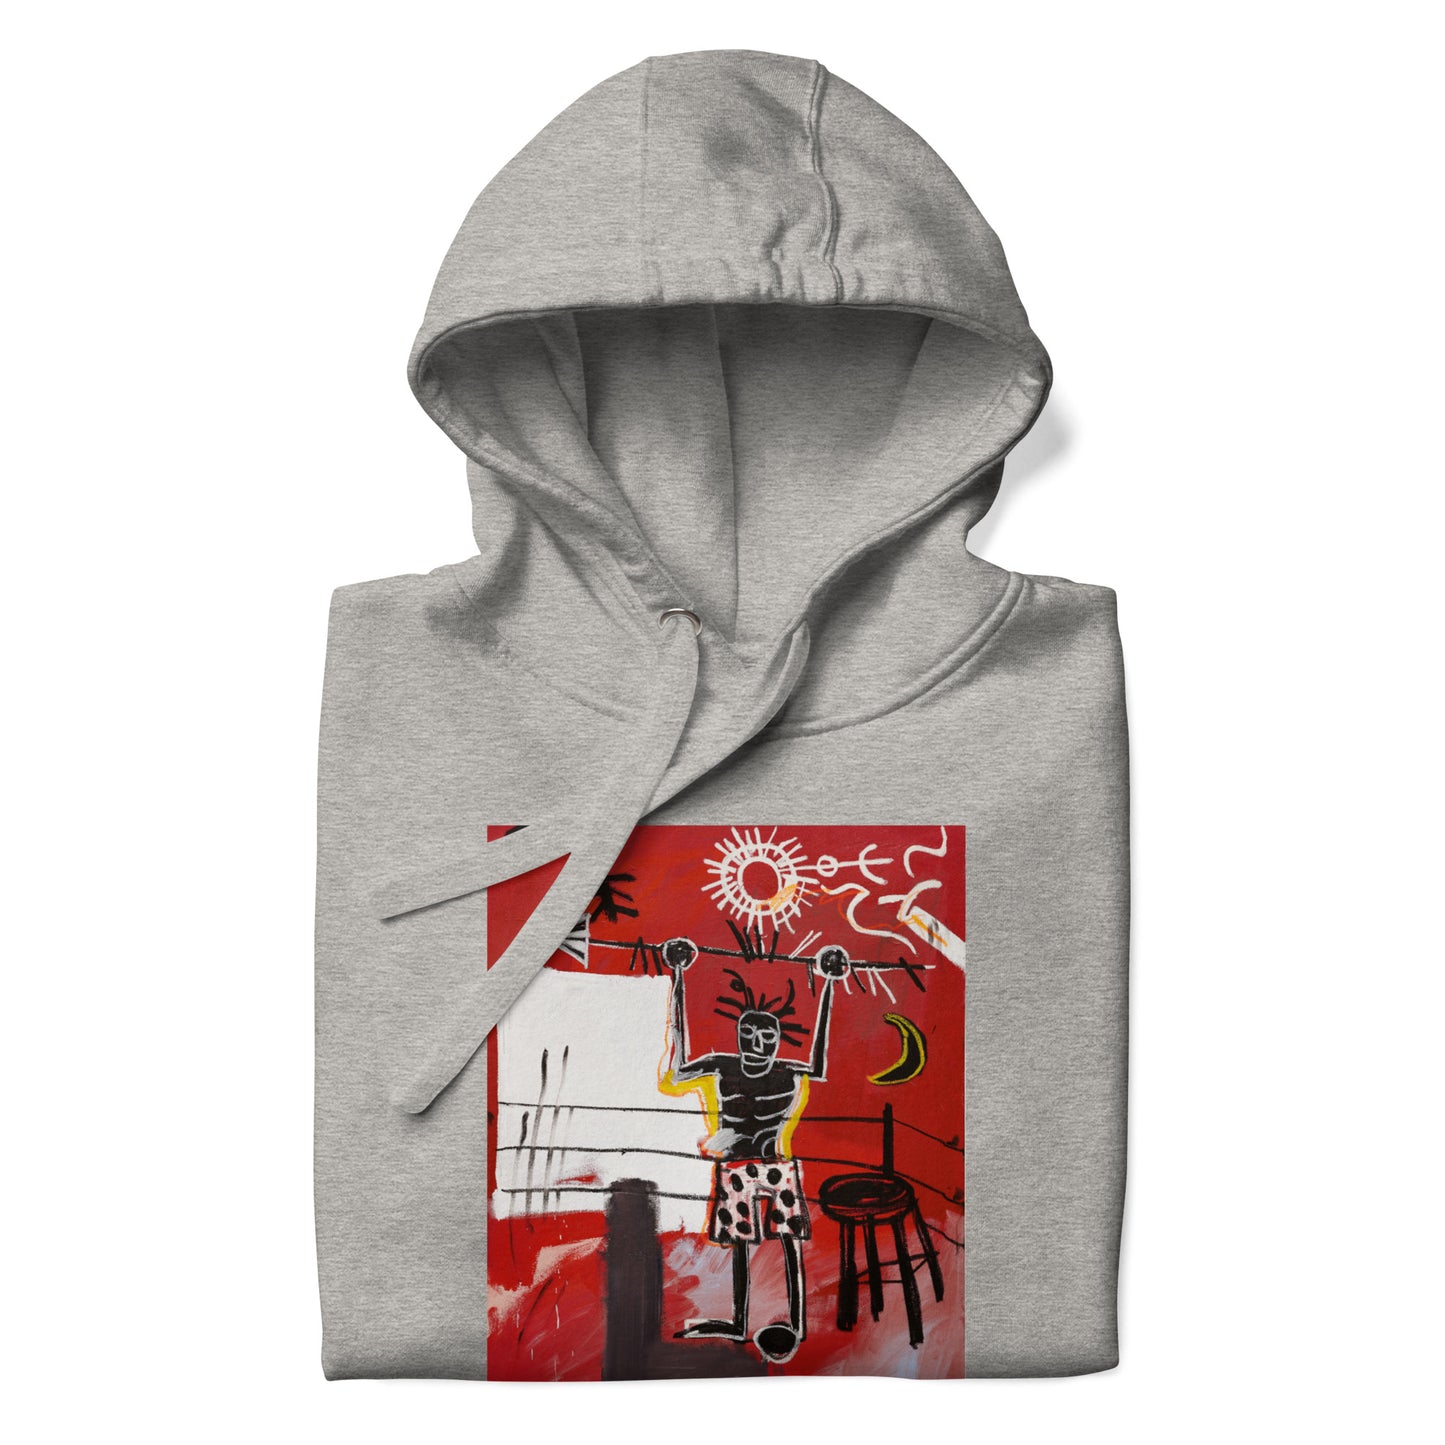 Jean-Michel Basquiat "The Ring" Artwork Printed Premium Streetwear Sweatshirt Hoodie Grey